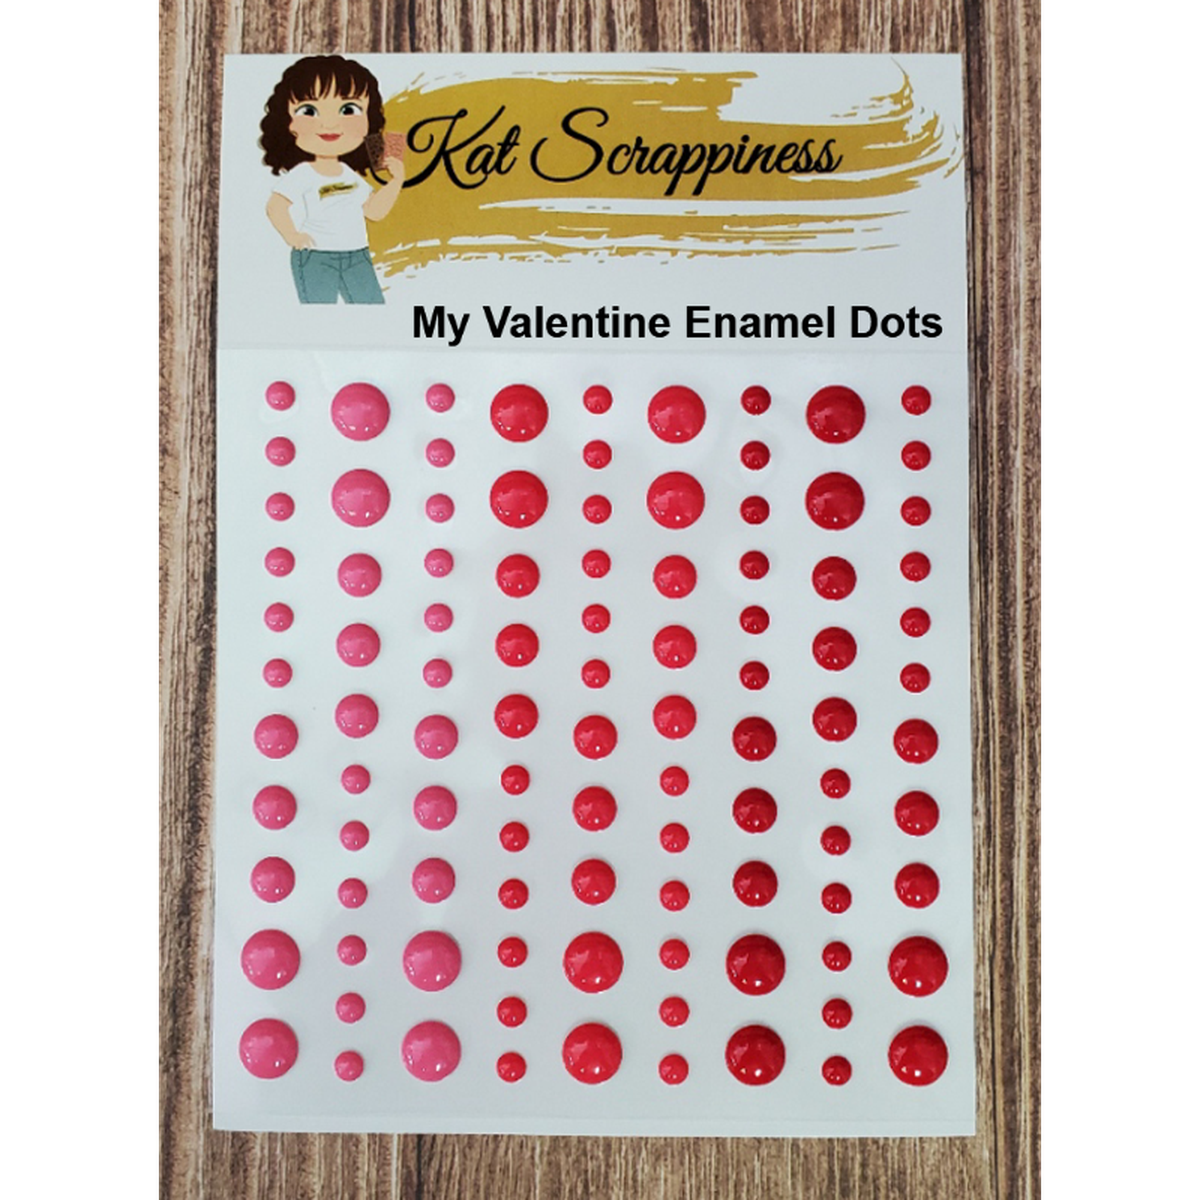 My Valentine Enamel Dots